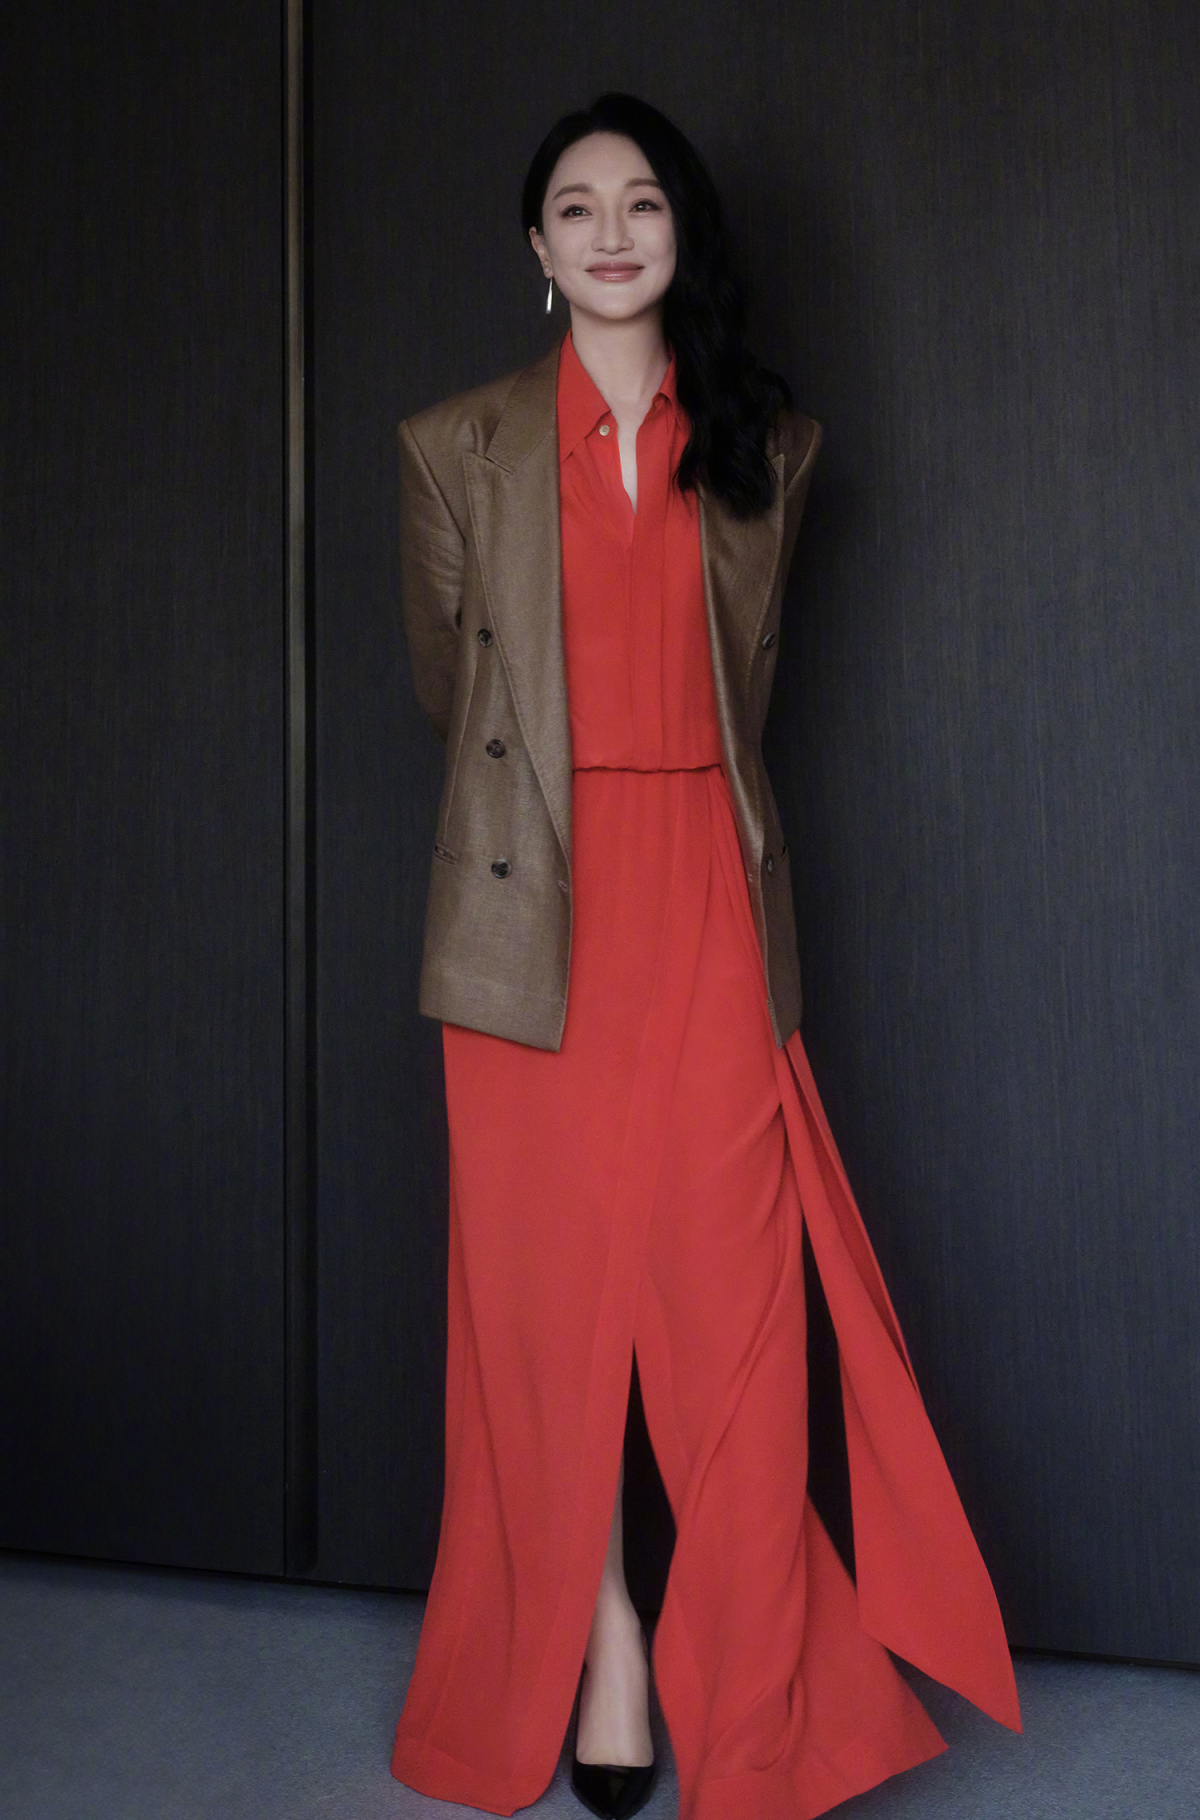 Tạp chí Vogue nhận xét sang ngũ tuần, Châu Tấn mặc trang phục đa dạng màu sắc hơn song vẫn theo phong cách thanh lịch, phối đồ đơn giản, chủ yếu chọn váy áo đơn sắc.